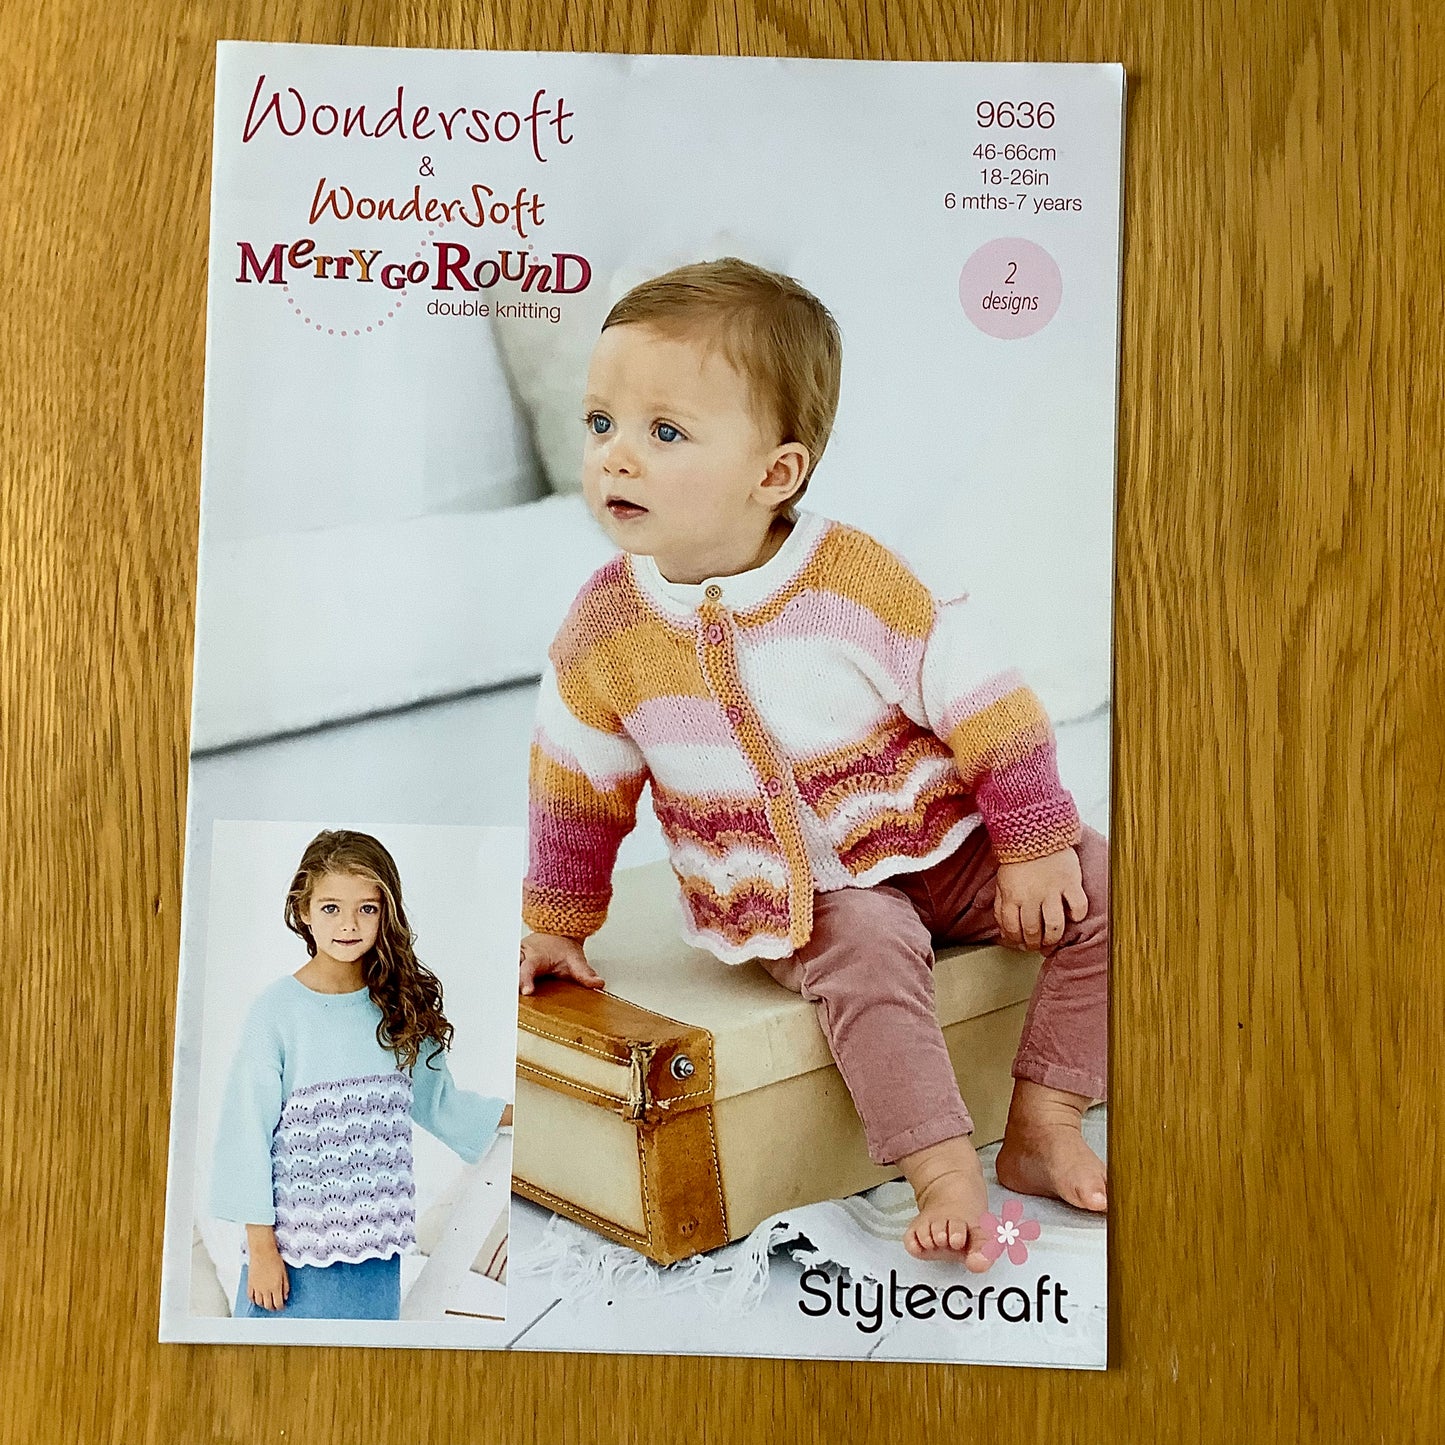 Stylecraft Wondersoft & Wondersoft Merry Go Round Double Knitting DK Pattern 6 Months - 7 Years 9636